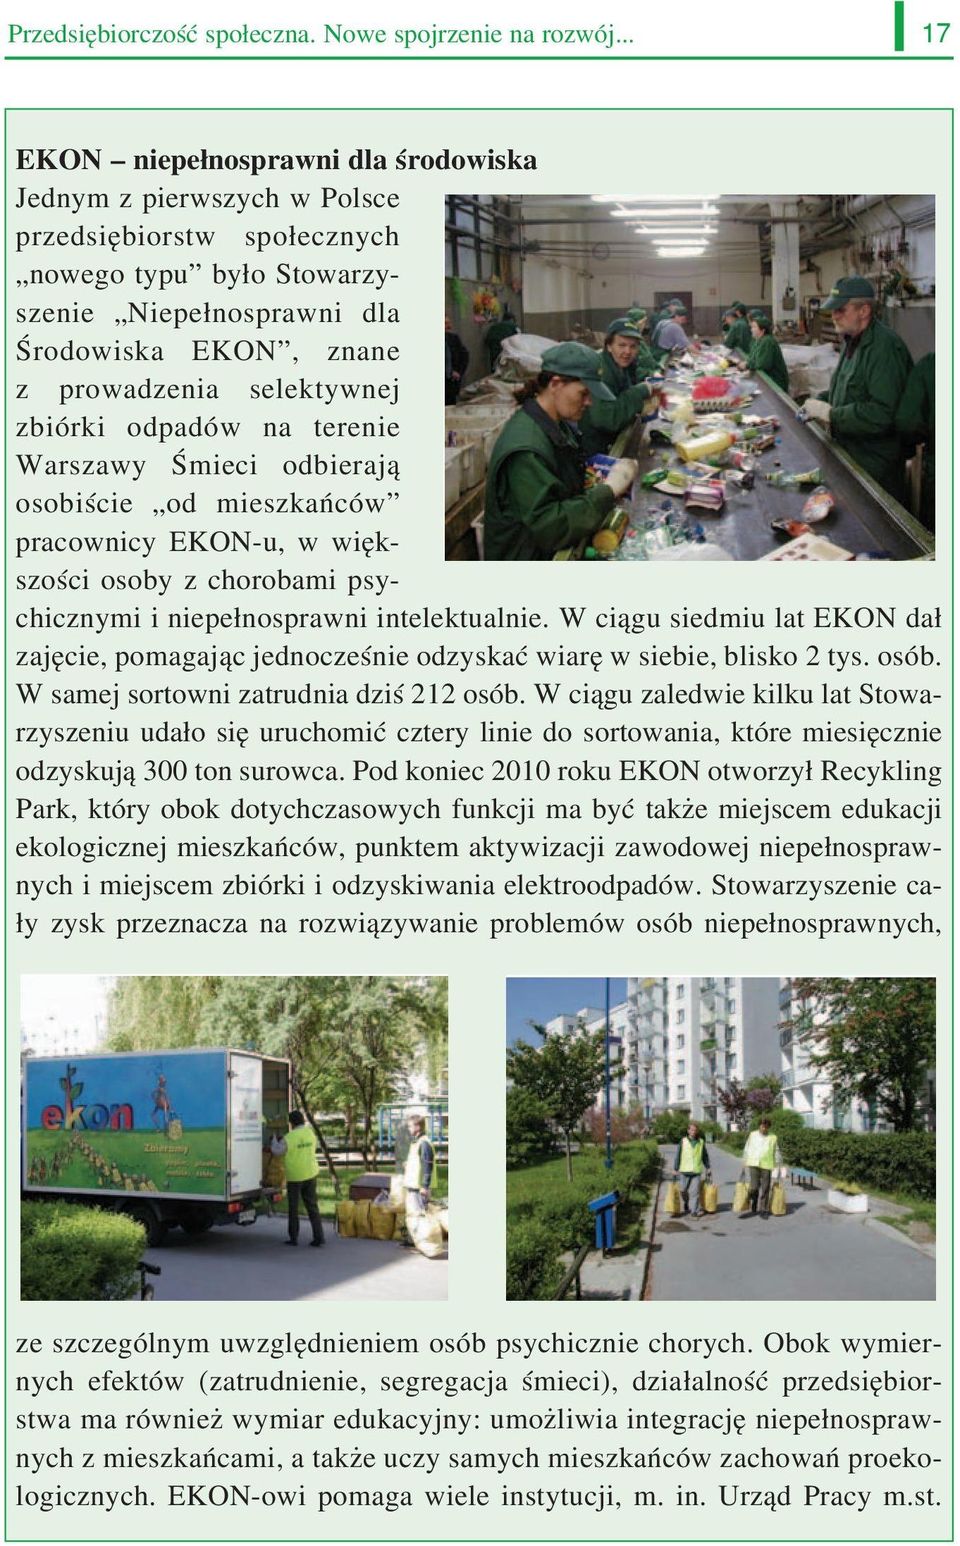 selektywnej zbiórki odpadów na terenie Warszawy Śmieci odbierają osobiście od mieszkańców pracownicy EKON u, w więk szości osoby z chorobami psy chicznymi i niepełnosprawni intelektualnie.